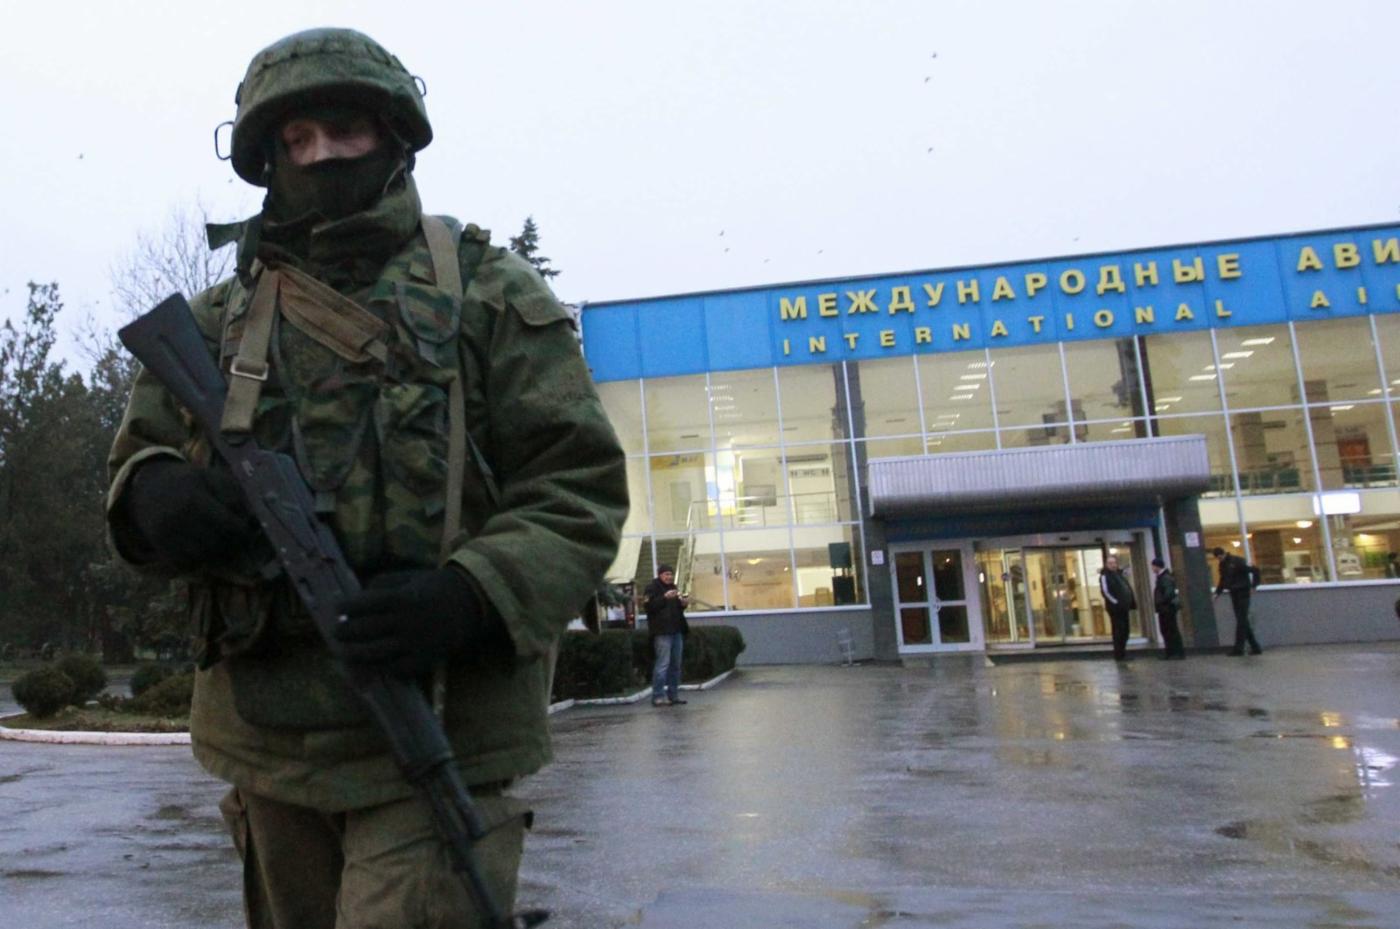  Незаконна анексія Криму Росією в 2014 році. Російський вартовий стоїть біля міжнародного аеропорту в Криму.
